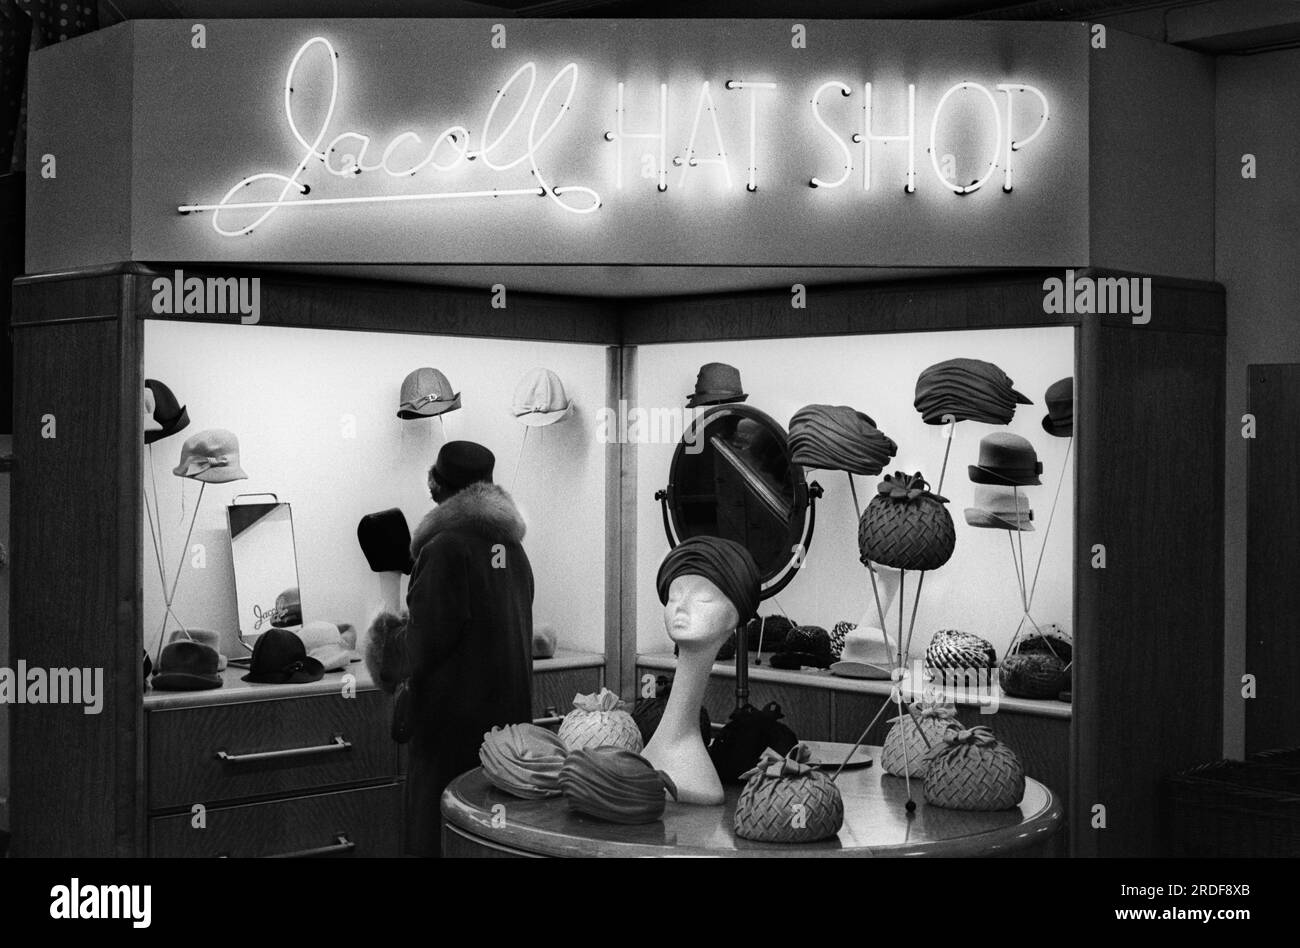 Jacoll Hat Shop, boutique dans le grand magasin Derry et Toms dans Kensington High Street. Londres, Angleterre vers 1968. ANNÉES 1960 ROYAUME-UNI HOMER SYKES Banque D'Images